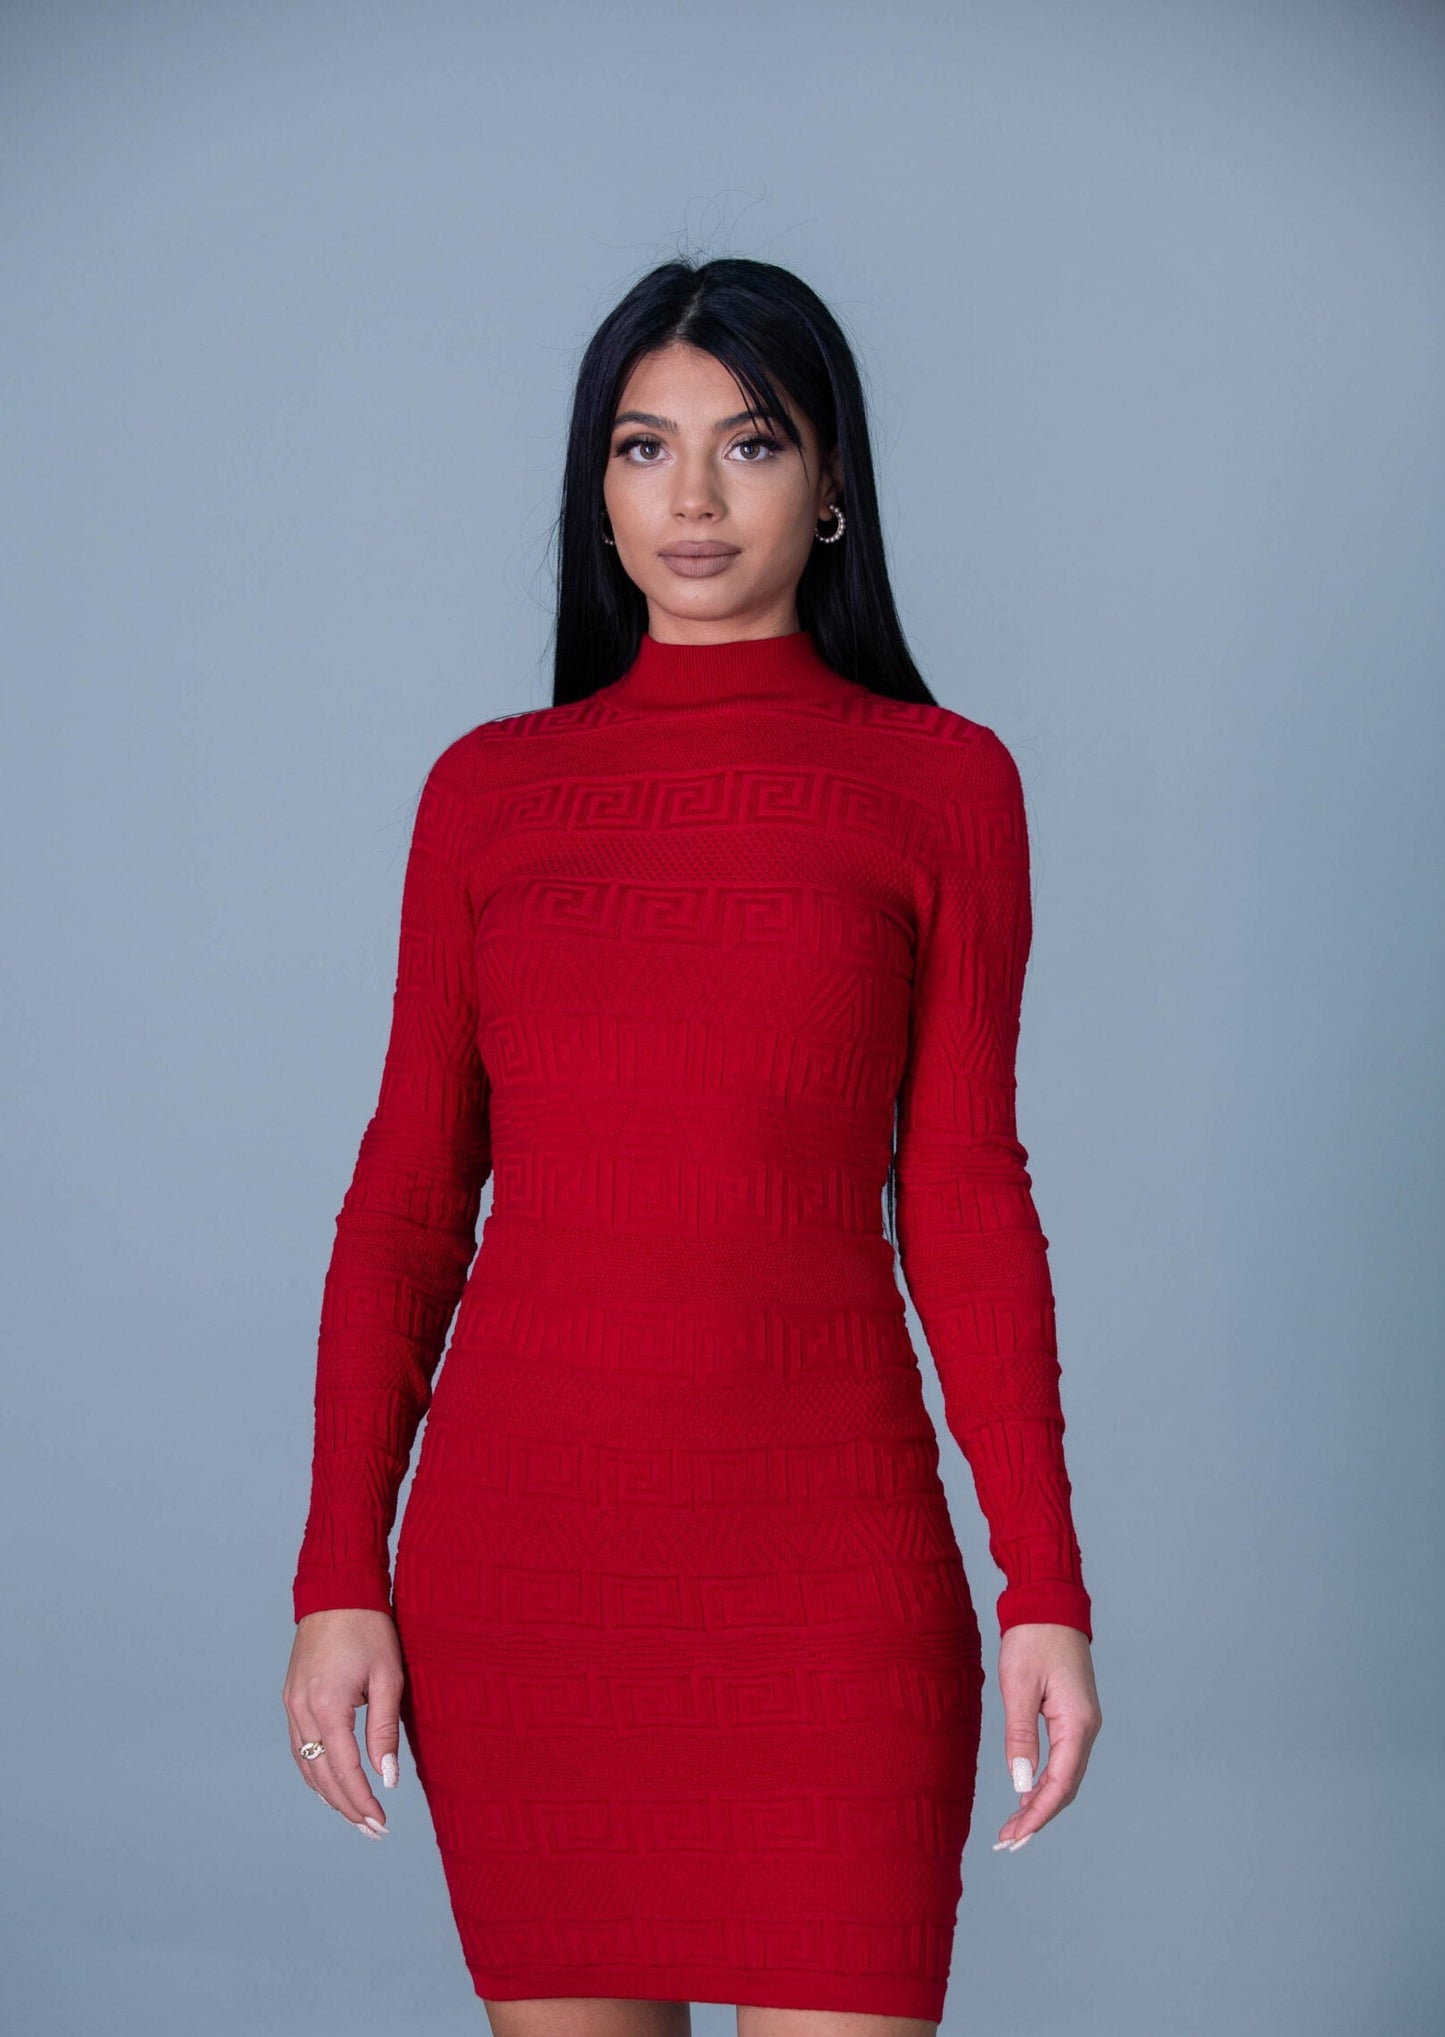 Дамска рокля FERINI  https://bvseductive.com/products/дамска-рокля-ferini-1  85 % вискоза 15 % нилон плетена рокля в червен цвят втален силует, извайващ фигурата предложение, с което ще направиш впечатление